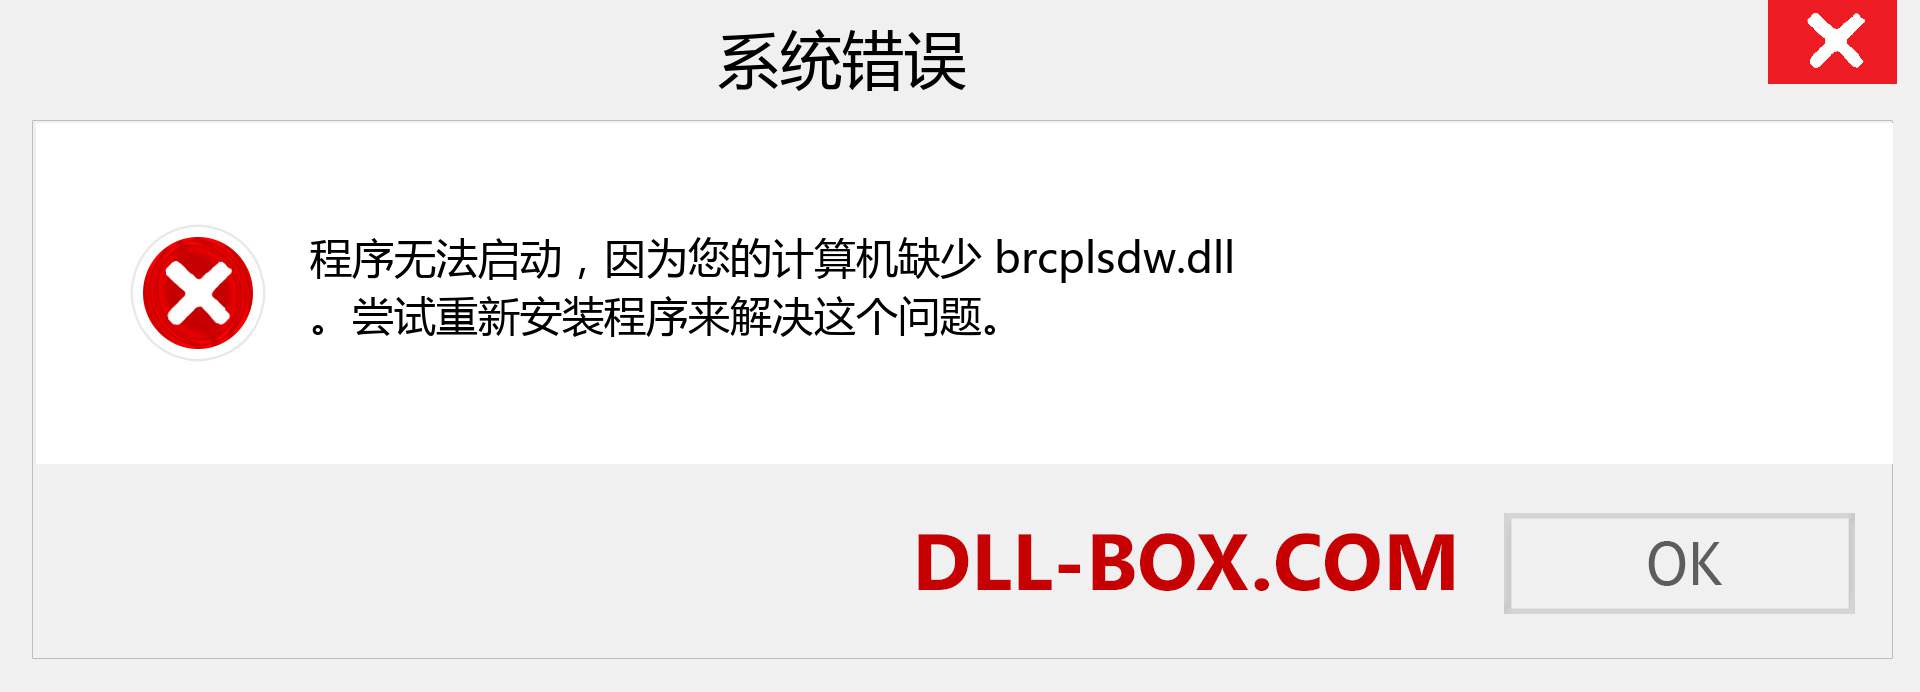 brcplsdw.dll 文件丢失？。 适用于 Windows 7、8、10 的下载 - 修复 Windows、照片、图像上的 brcplsdw dll 丢失错误